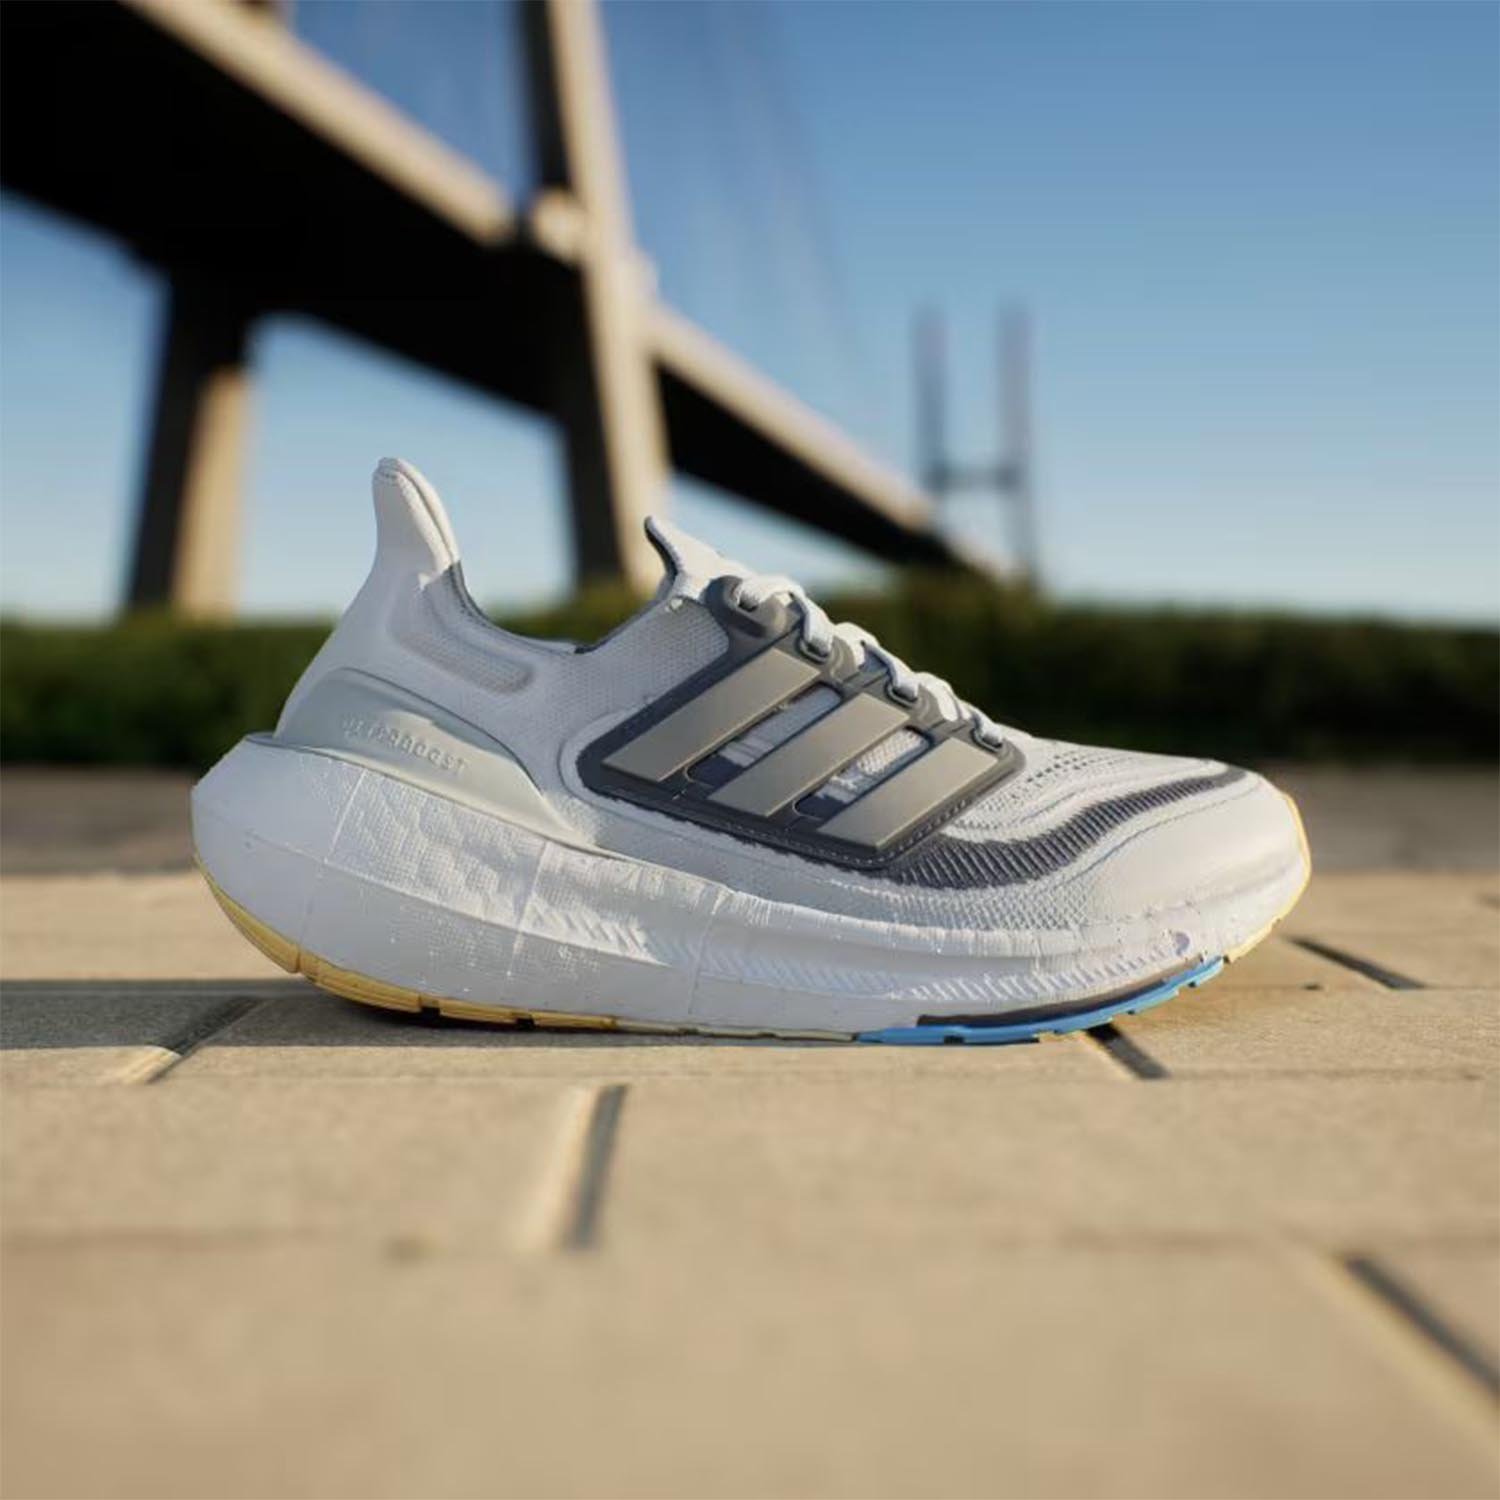 Adidas Ultraboost Light Kadın Yol Koşu Ayakkabısı - Mavi - 1